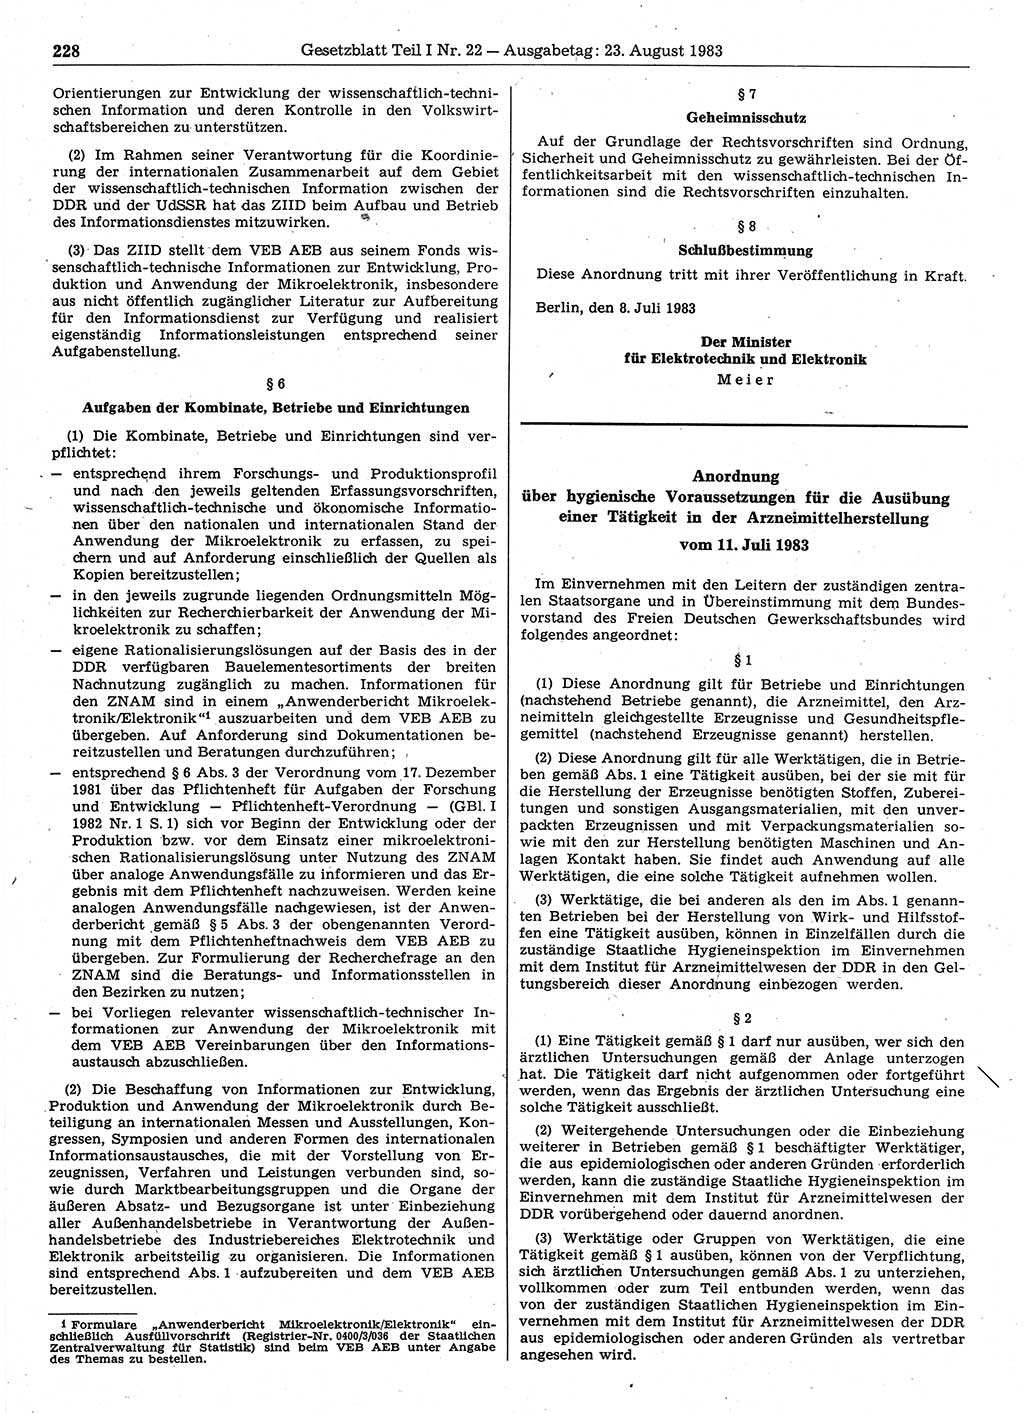 Gesetzblatt (GBl.) der Deutschen Demokratischen Republik (DDR) Teil Ⅰ 1983, Seite 228 (GBl. DDR Ⅰ 1983, S. 228)